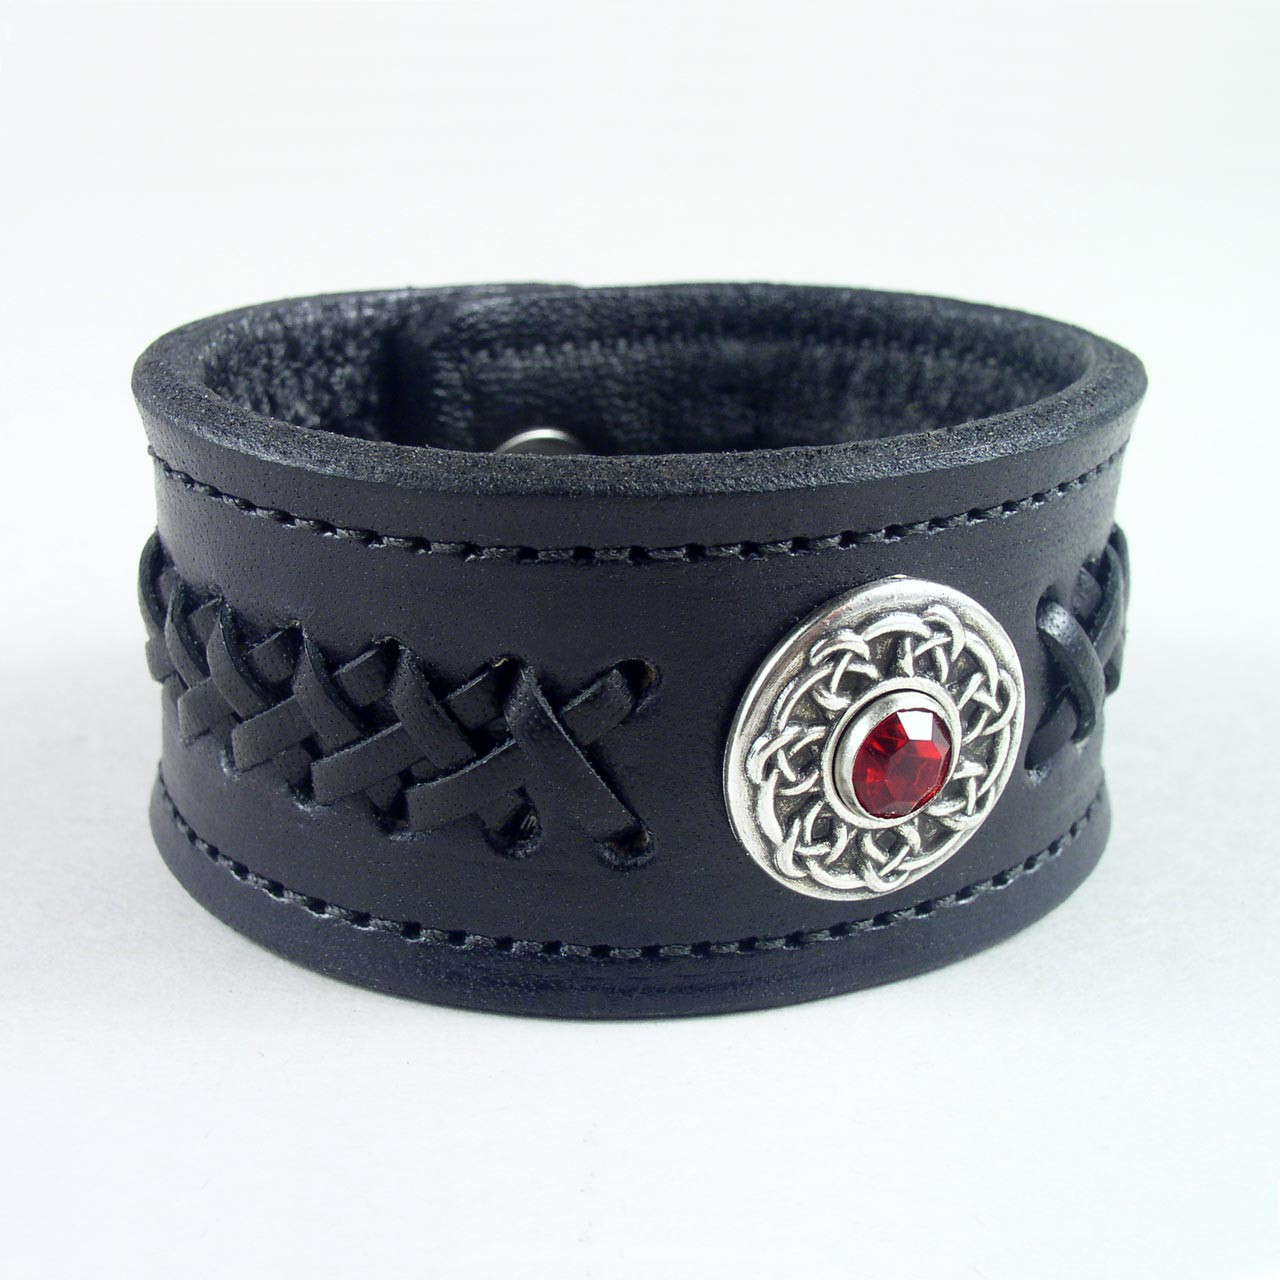 OLE LYNGGAARD Black Leather Bracelet for Sale | Denver Colorado